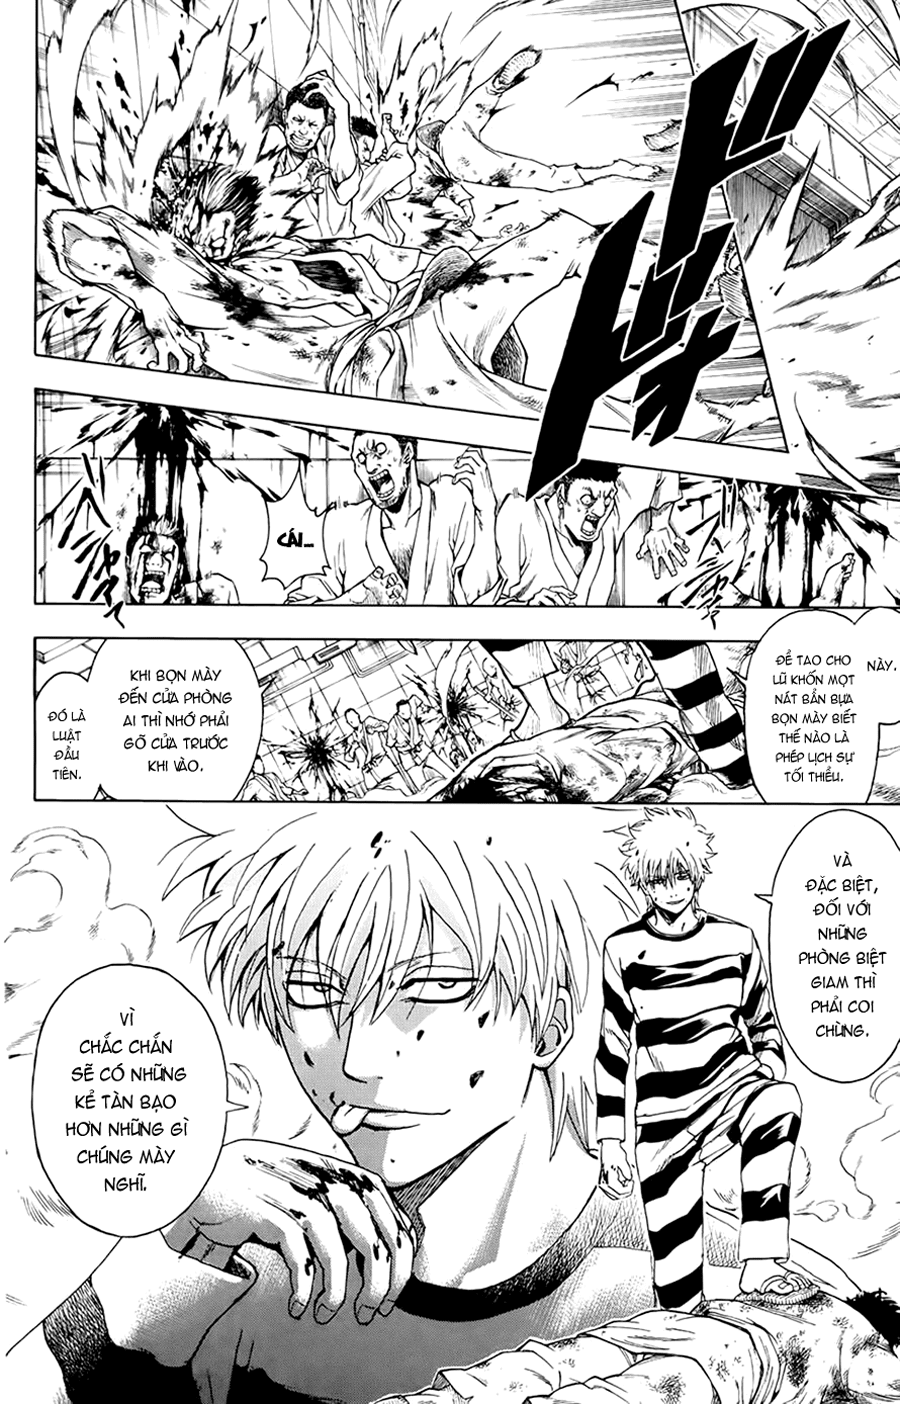 Gintama chapter 342 trang 13